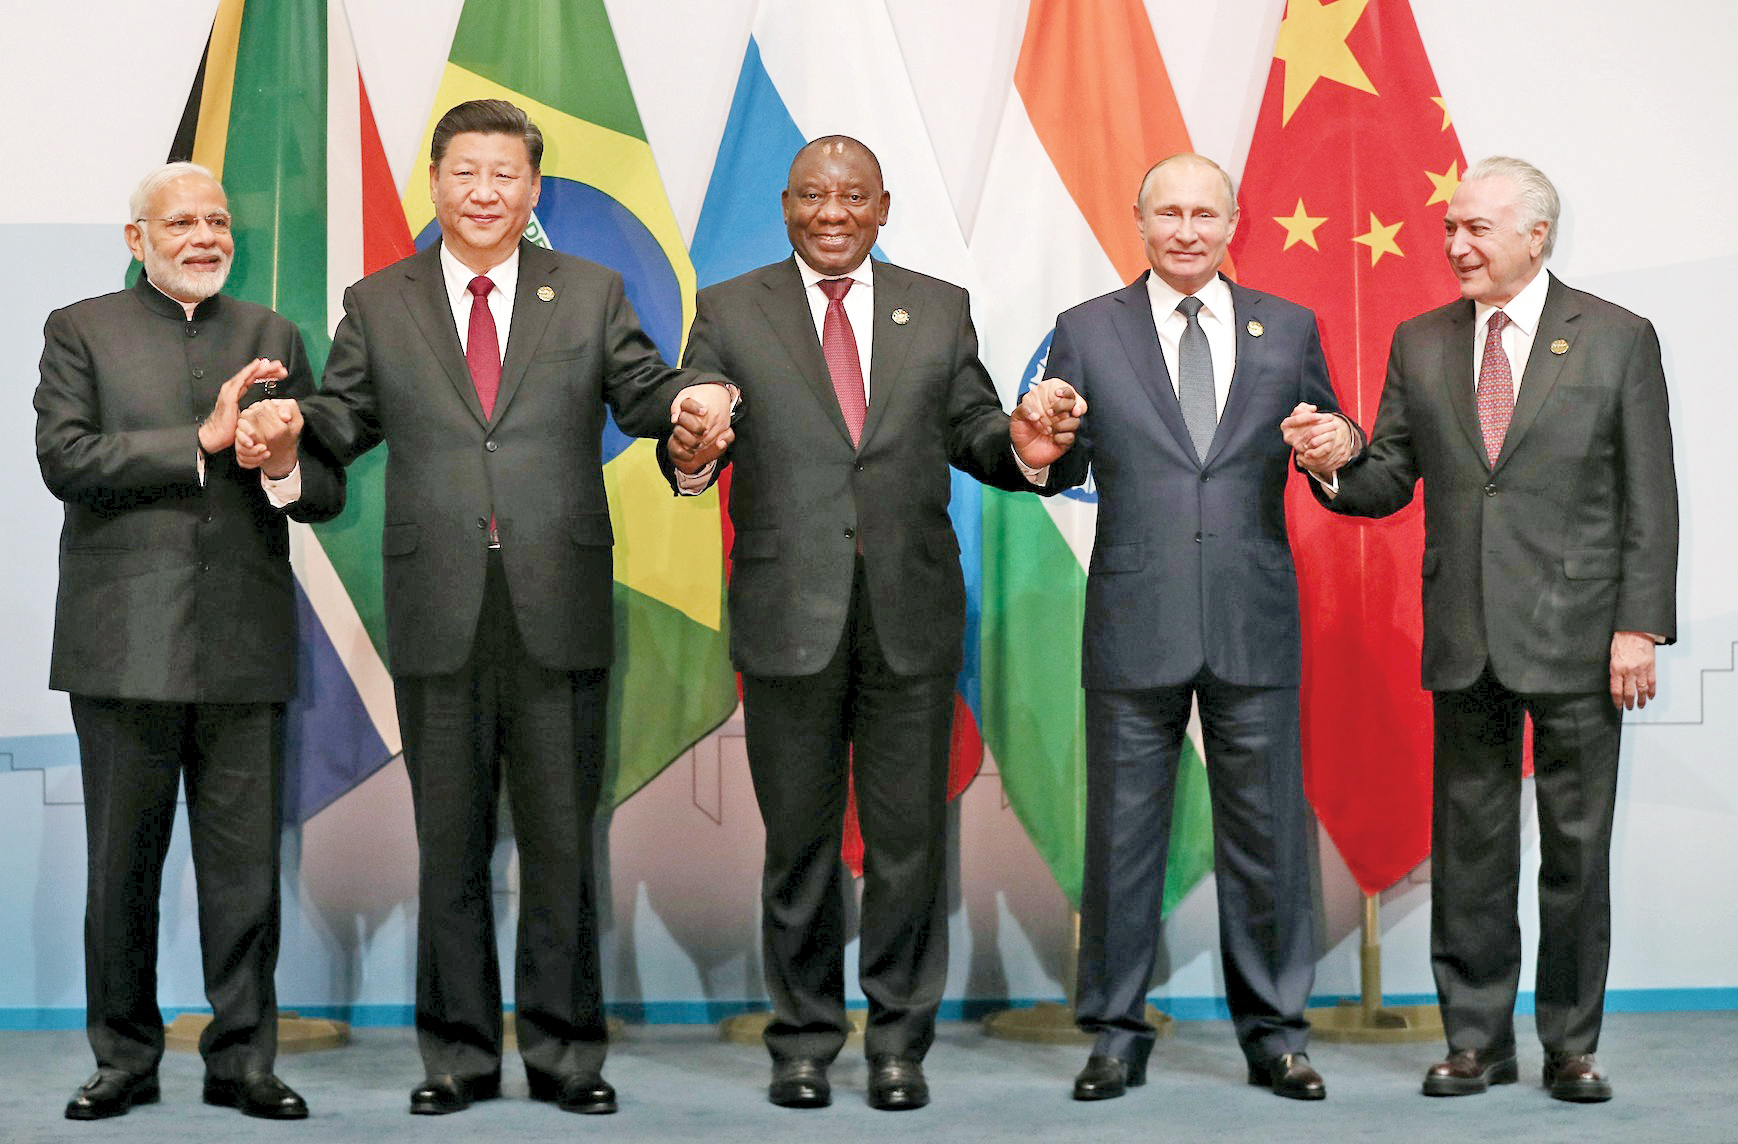 Grupul BRICS al marilor economii emergente se vrea o contragreutate reală la Occident, dolar şi instituţiile financiare vestice, dar cât de realiste sunt ambiţiile acestuia?